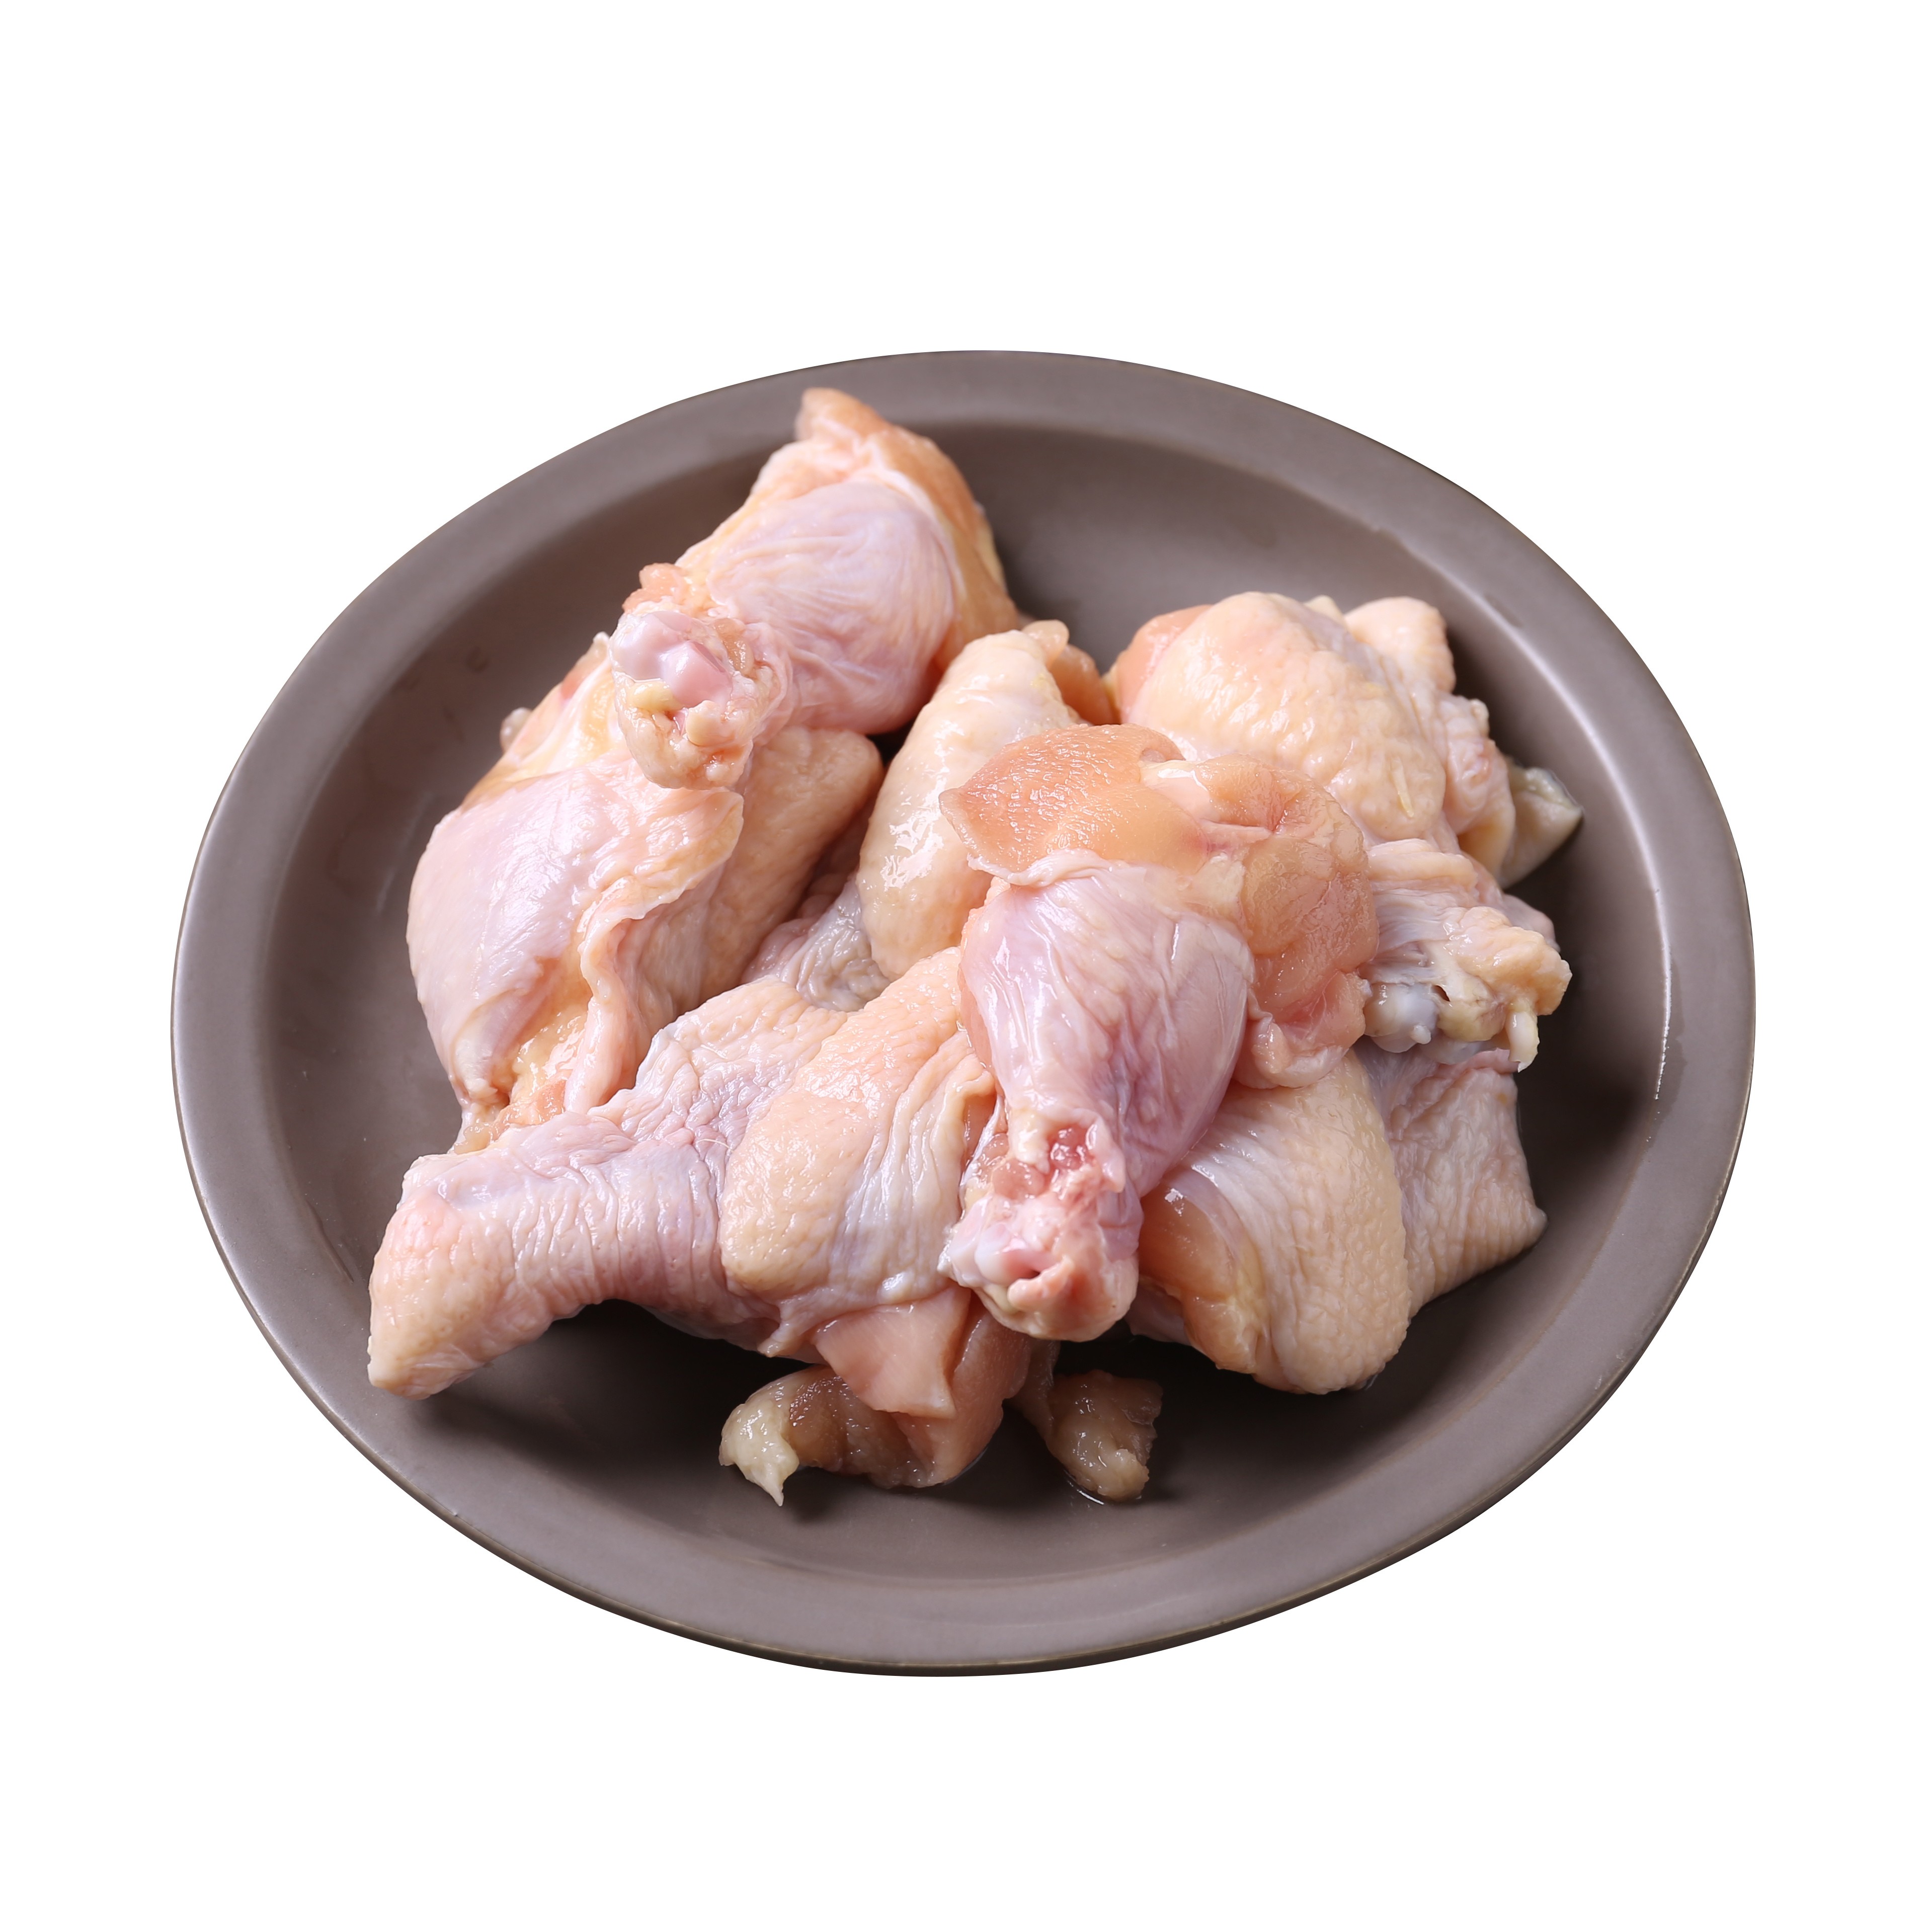 【有检疫证送调料】冷冻鸡翅根原箱20斤 共10包 鸡翅膀 新鲜速冻生鲜